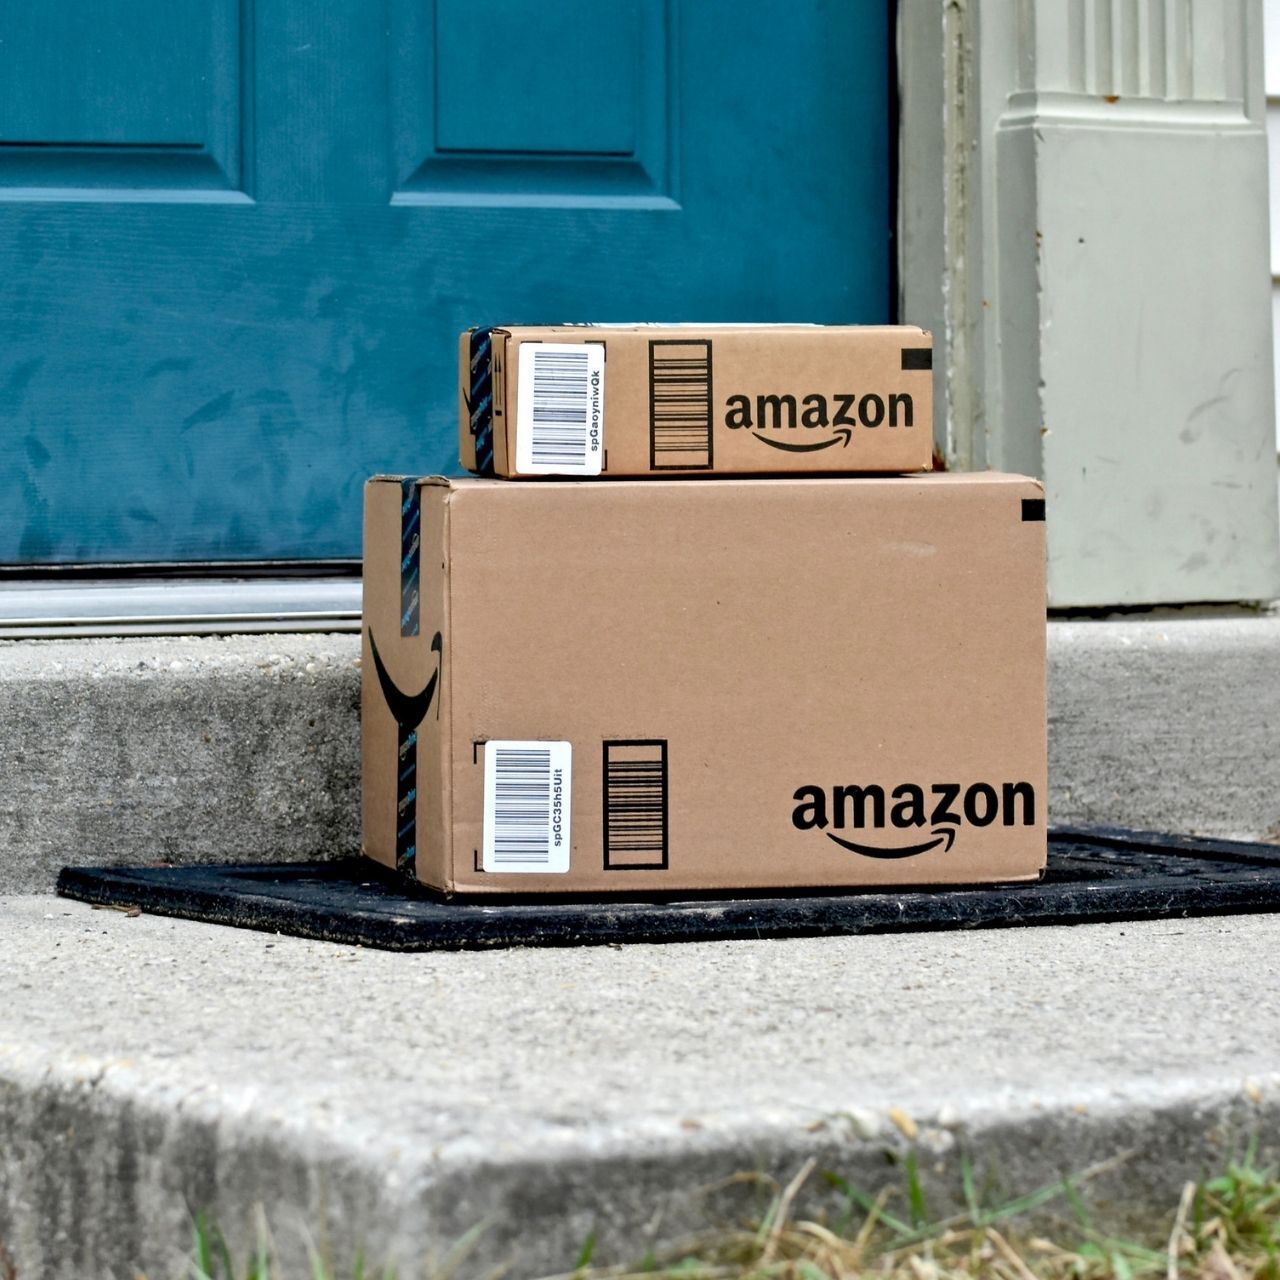 La Amazon SEO si sta rivelando di straordinaria importanza per posizionare al meglio i propri prodotti